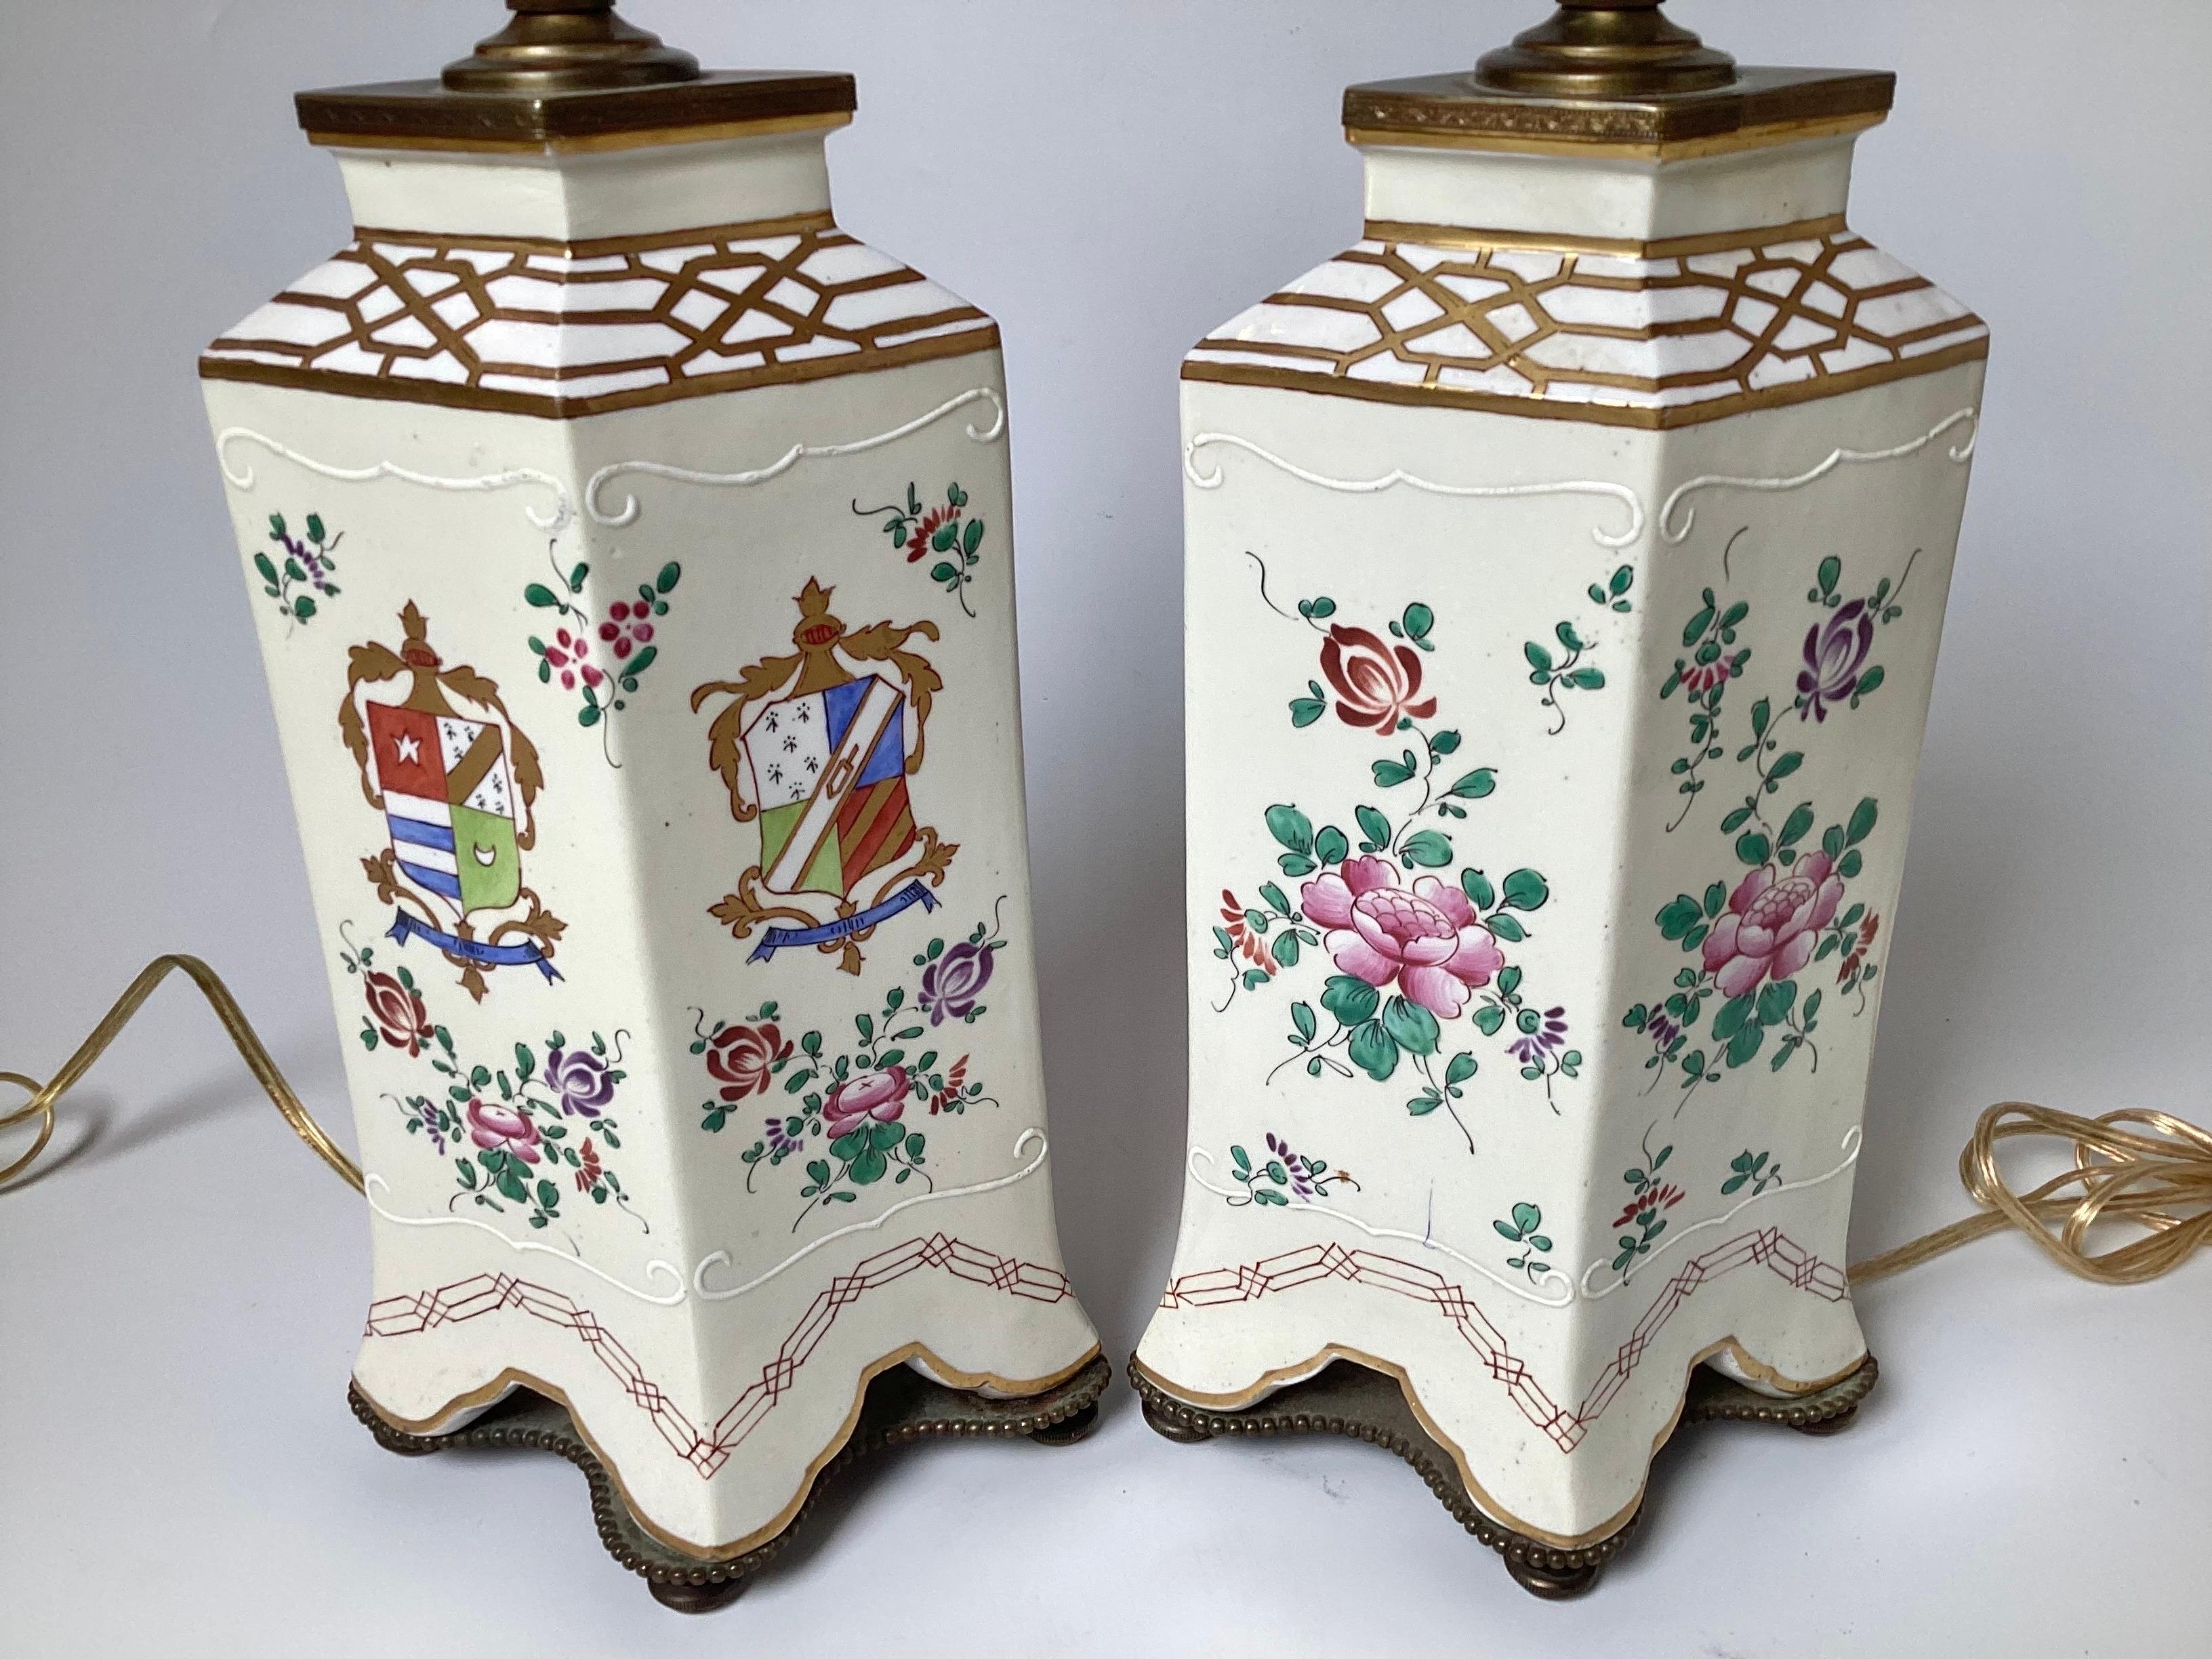 Une élégante paire de lampes de table en porcelaine française de style Samson, décorées d'un armorial. Elles sont marquées 